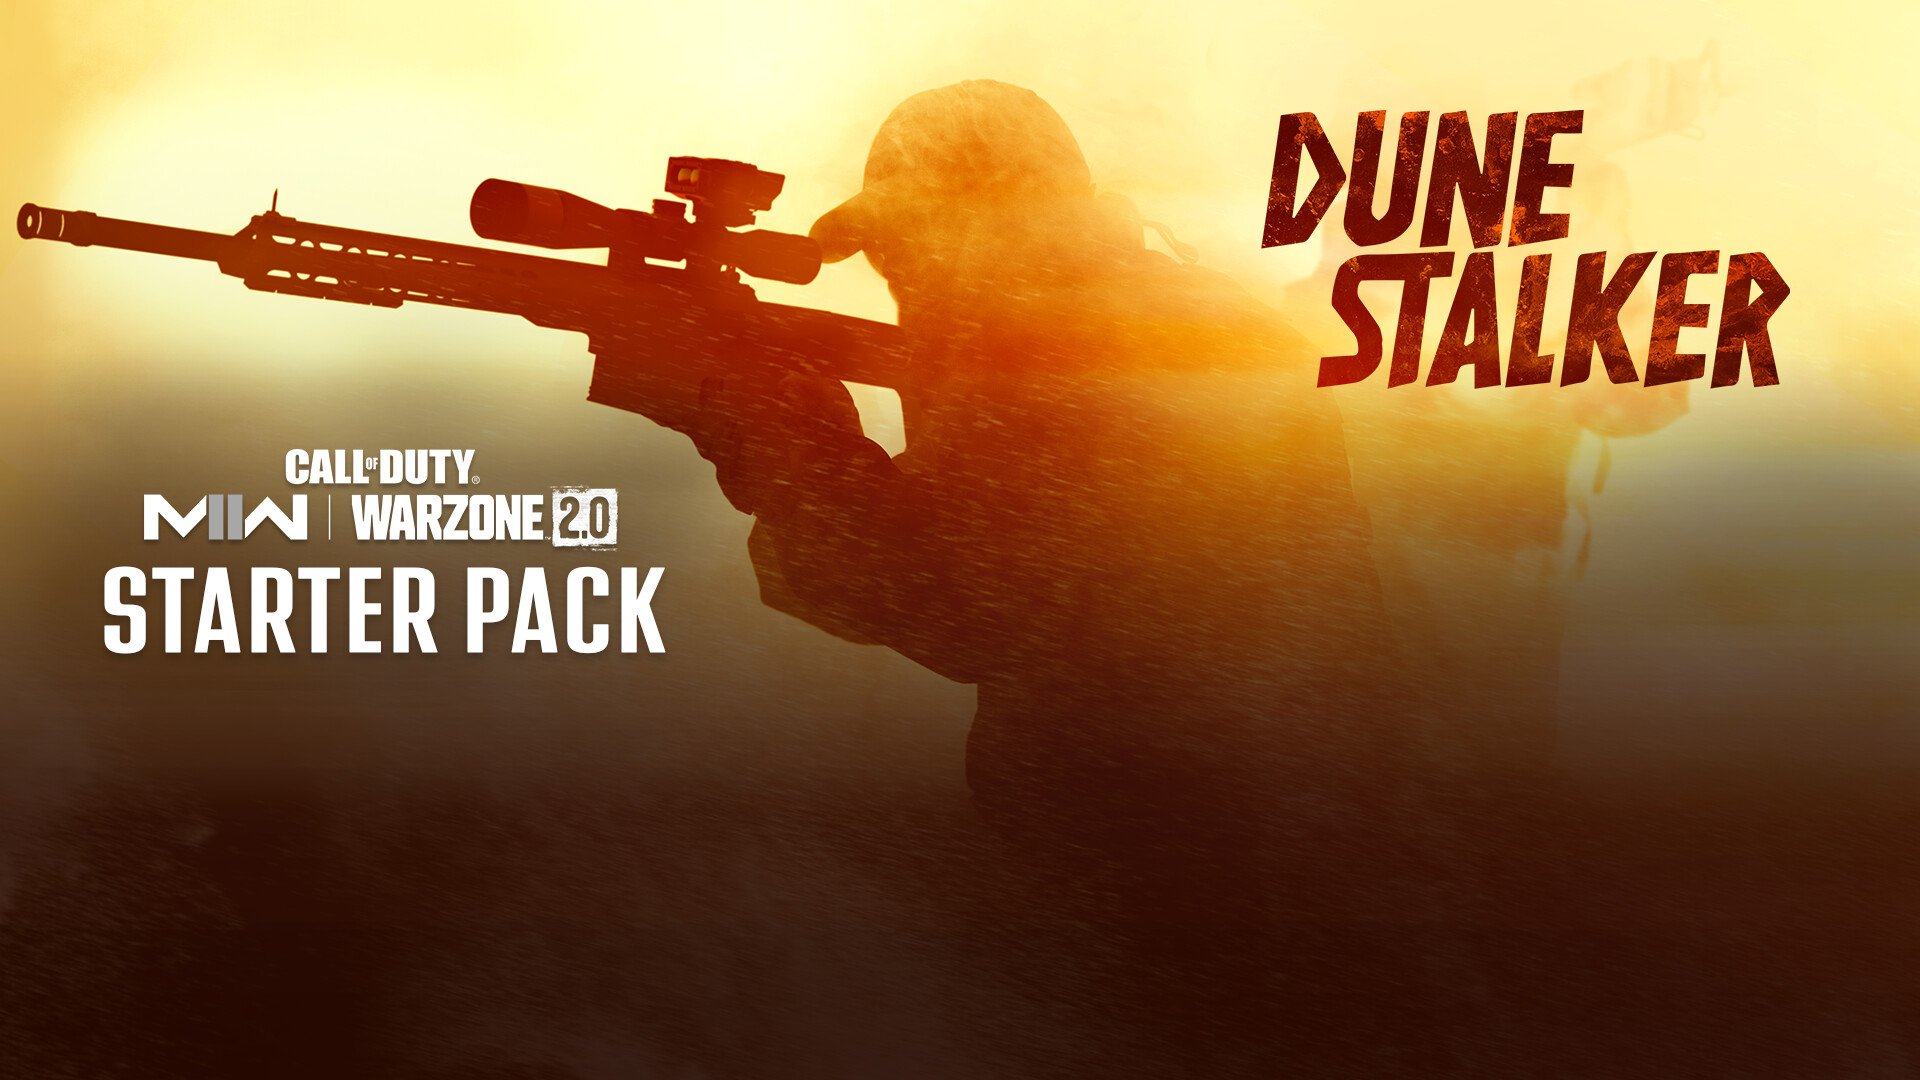 Call of Duty: Modern Warfare II - Dune Stalker: Starter Pack DLC Steam Altergift 13.93 $